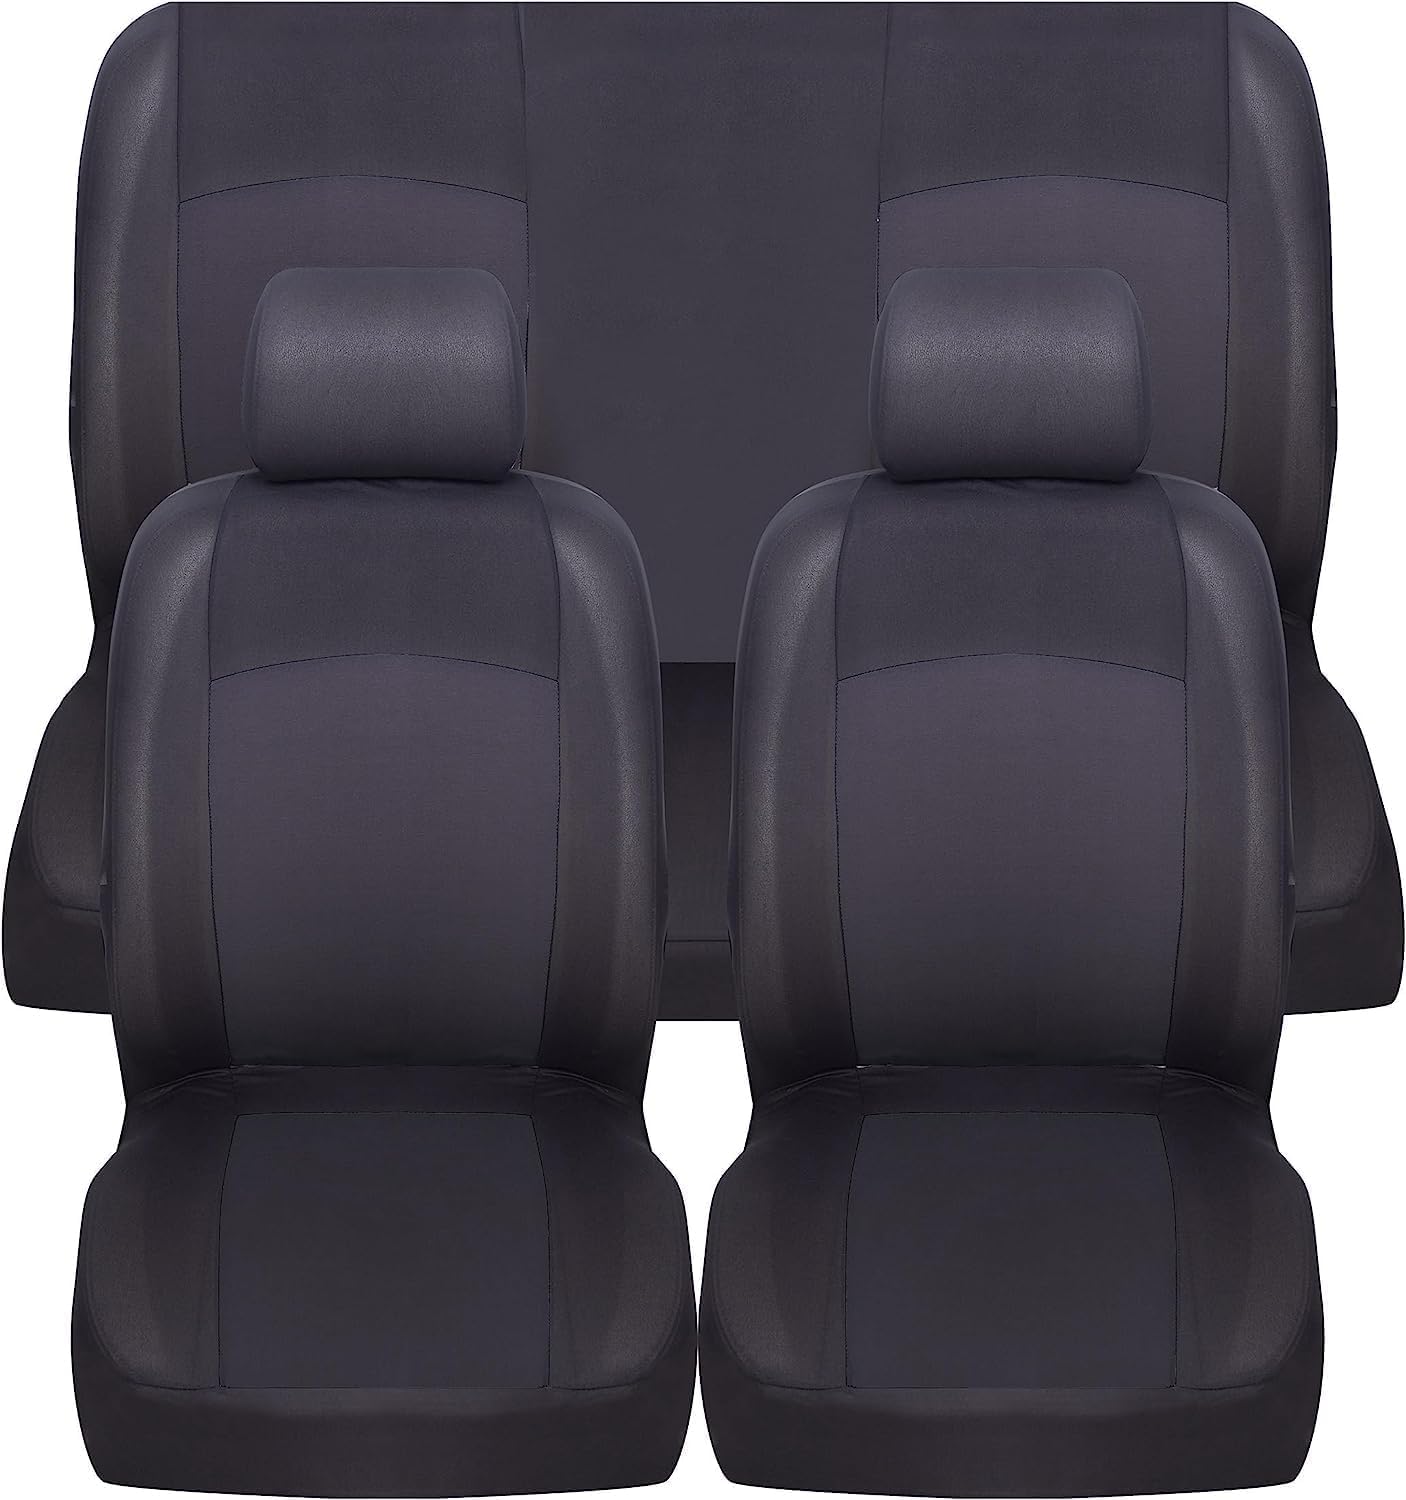 Susy Shop Universal-Sitzbezüge für vorne und hinten, verschiedene Farben, weich, bequem, atmungsaktiv, Schutz für Nutzsitze (schwarz) von Susy Shop